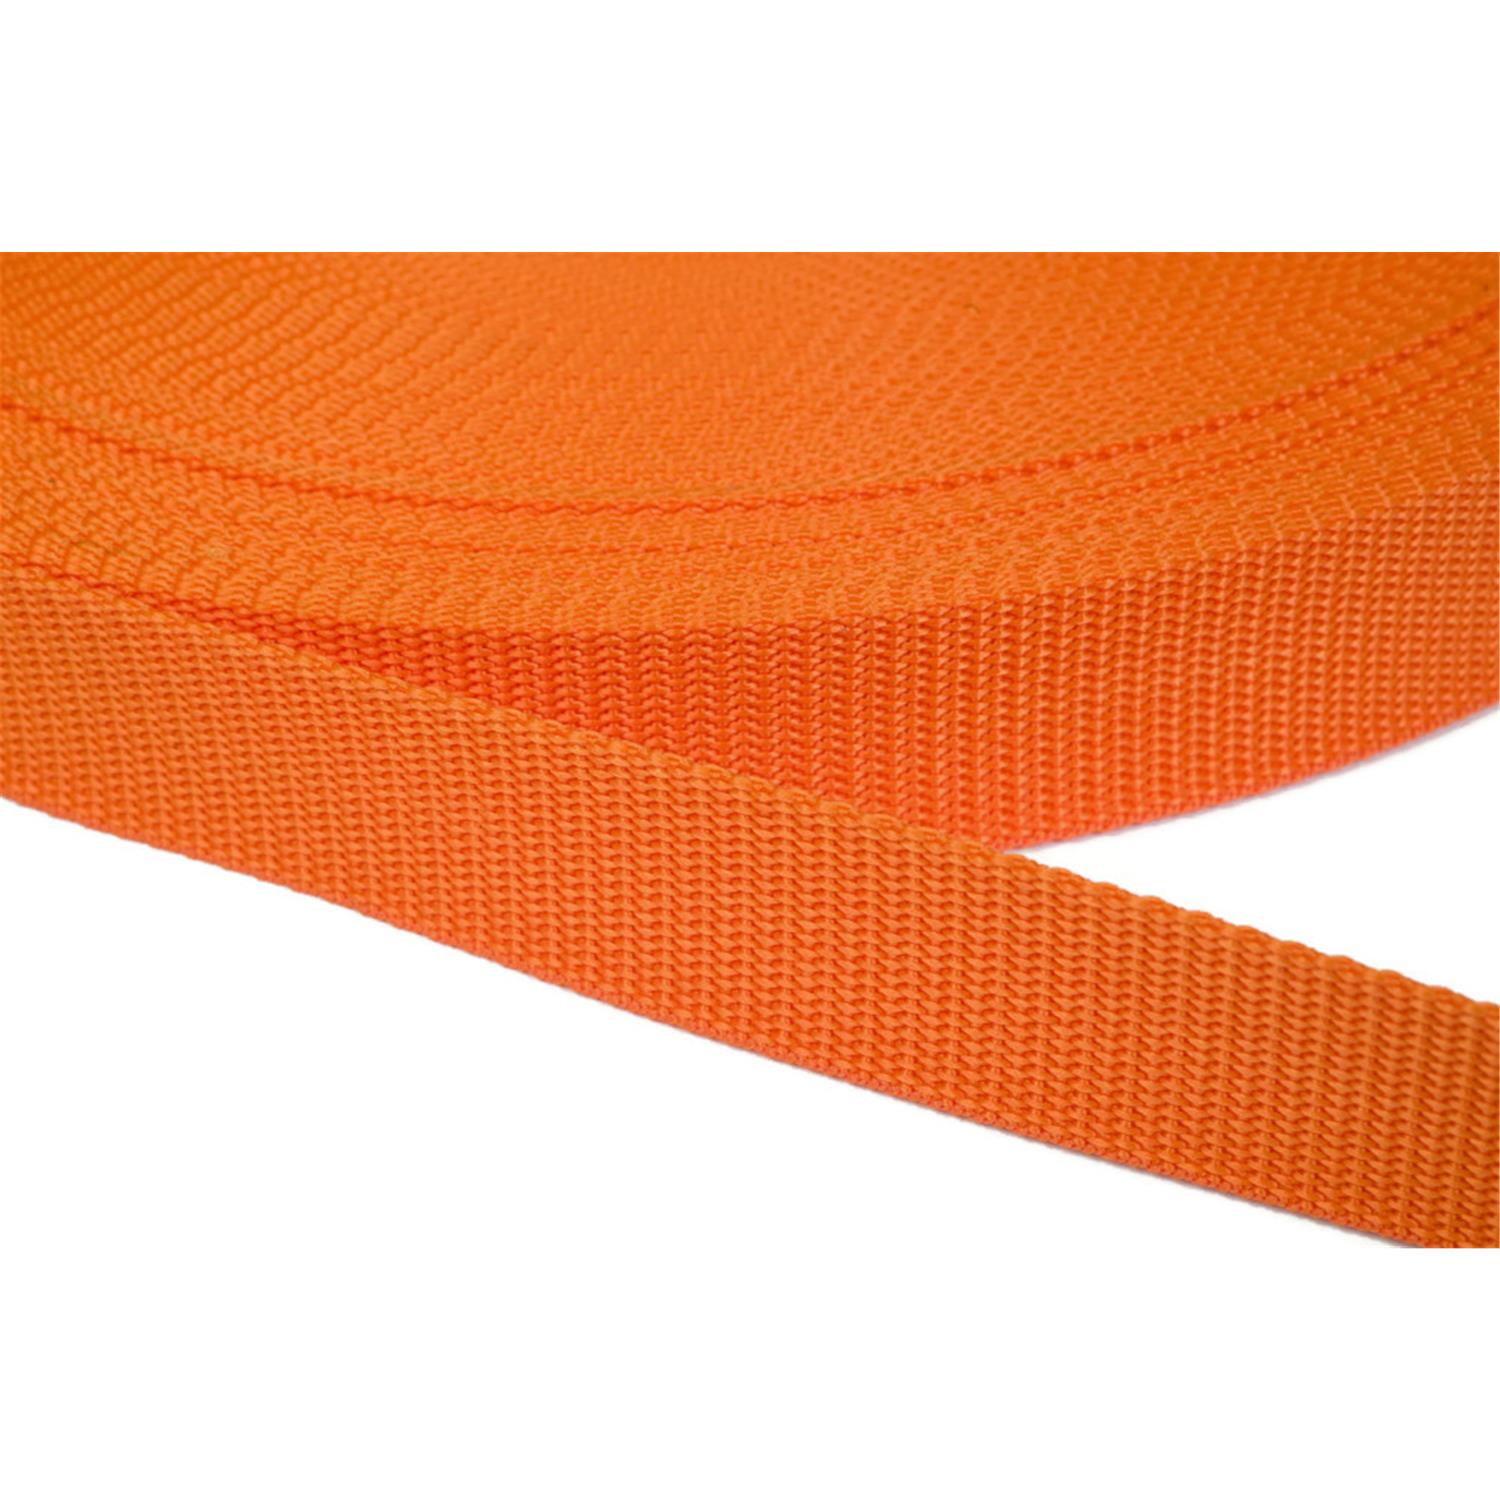 Gurtband 15mm breit aus Polypropylen in 41 Farben 11 - orange 50 Meter